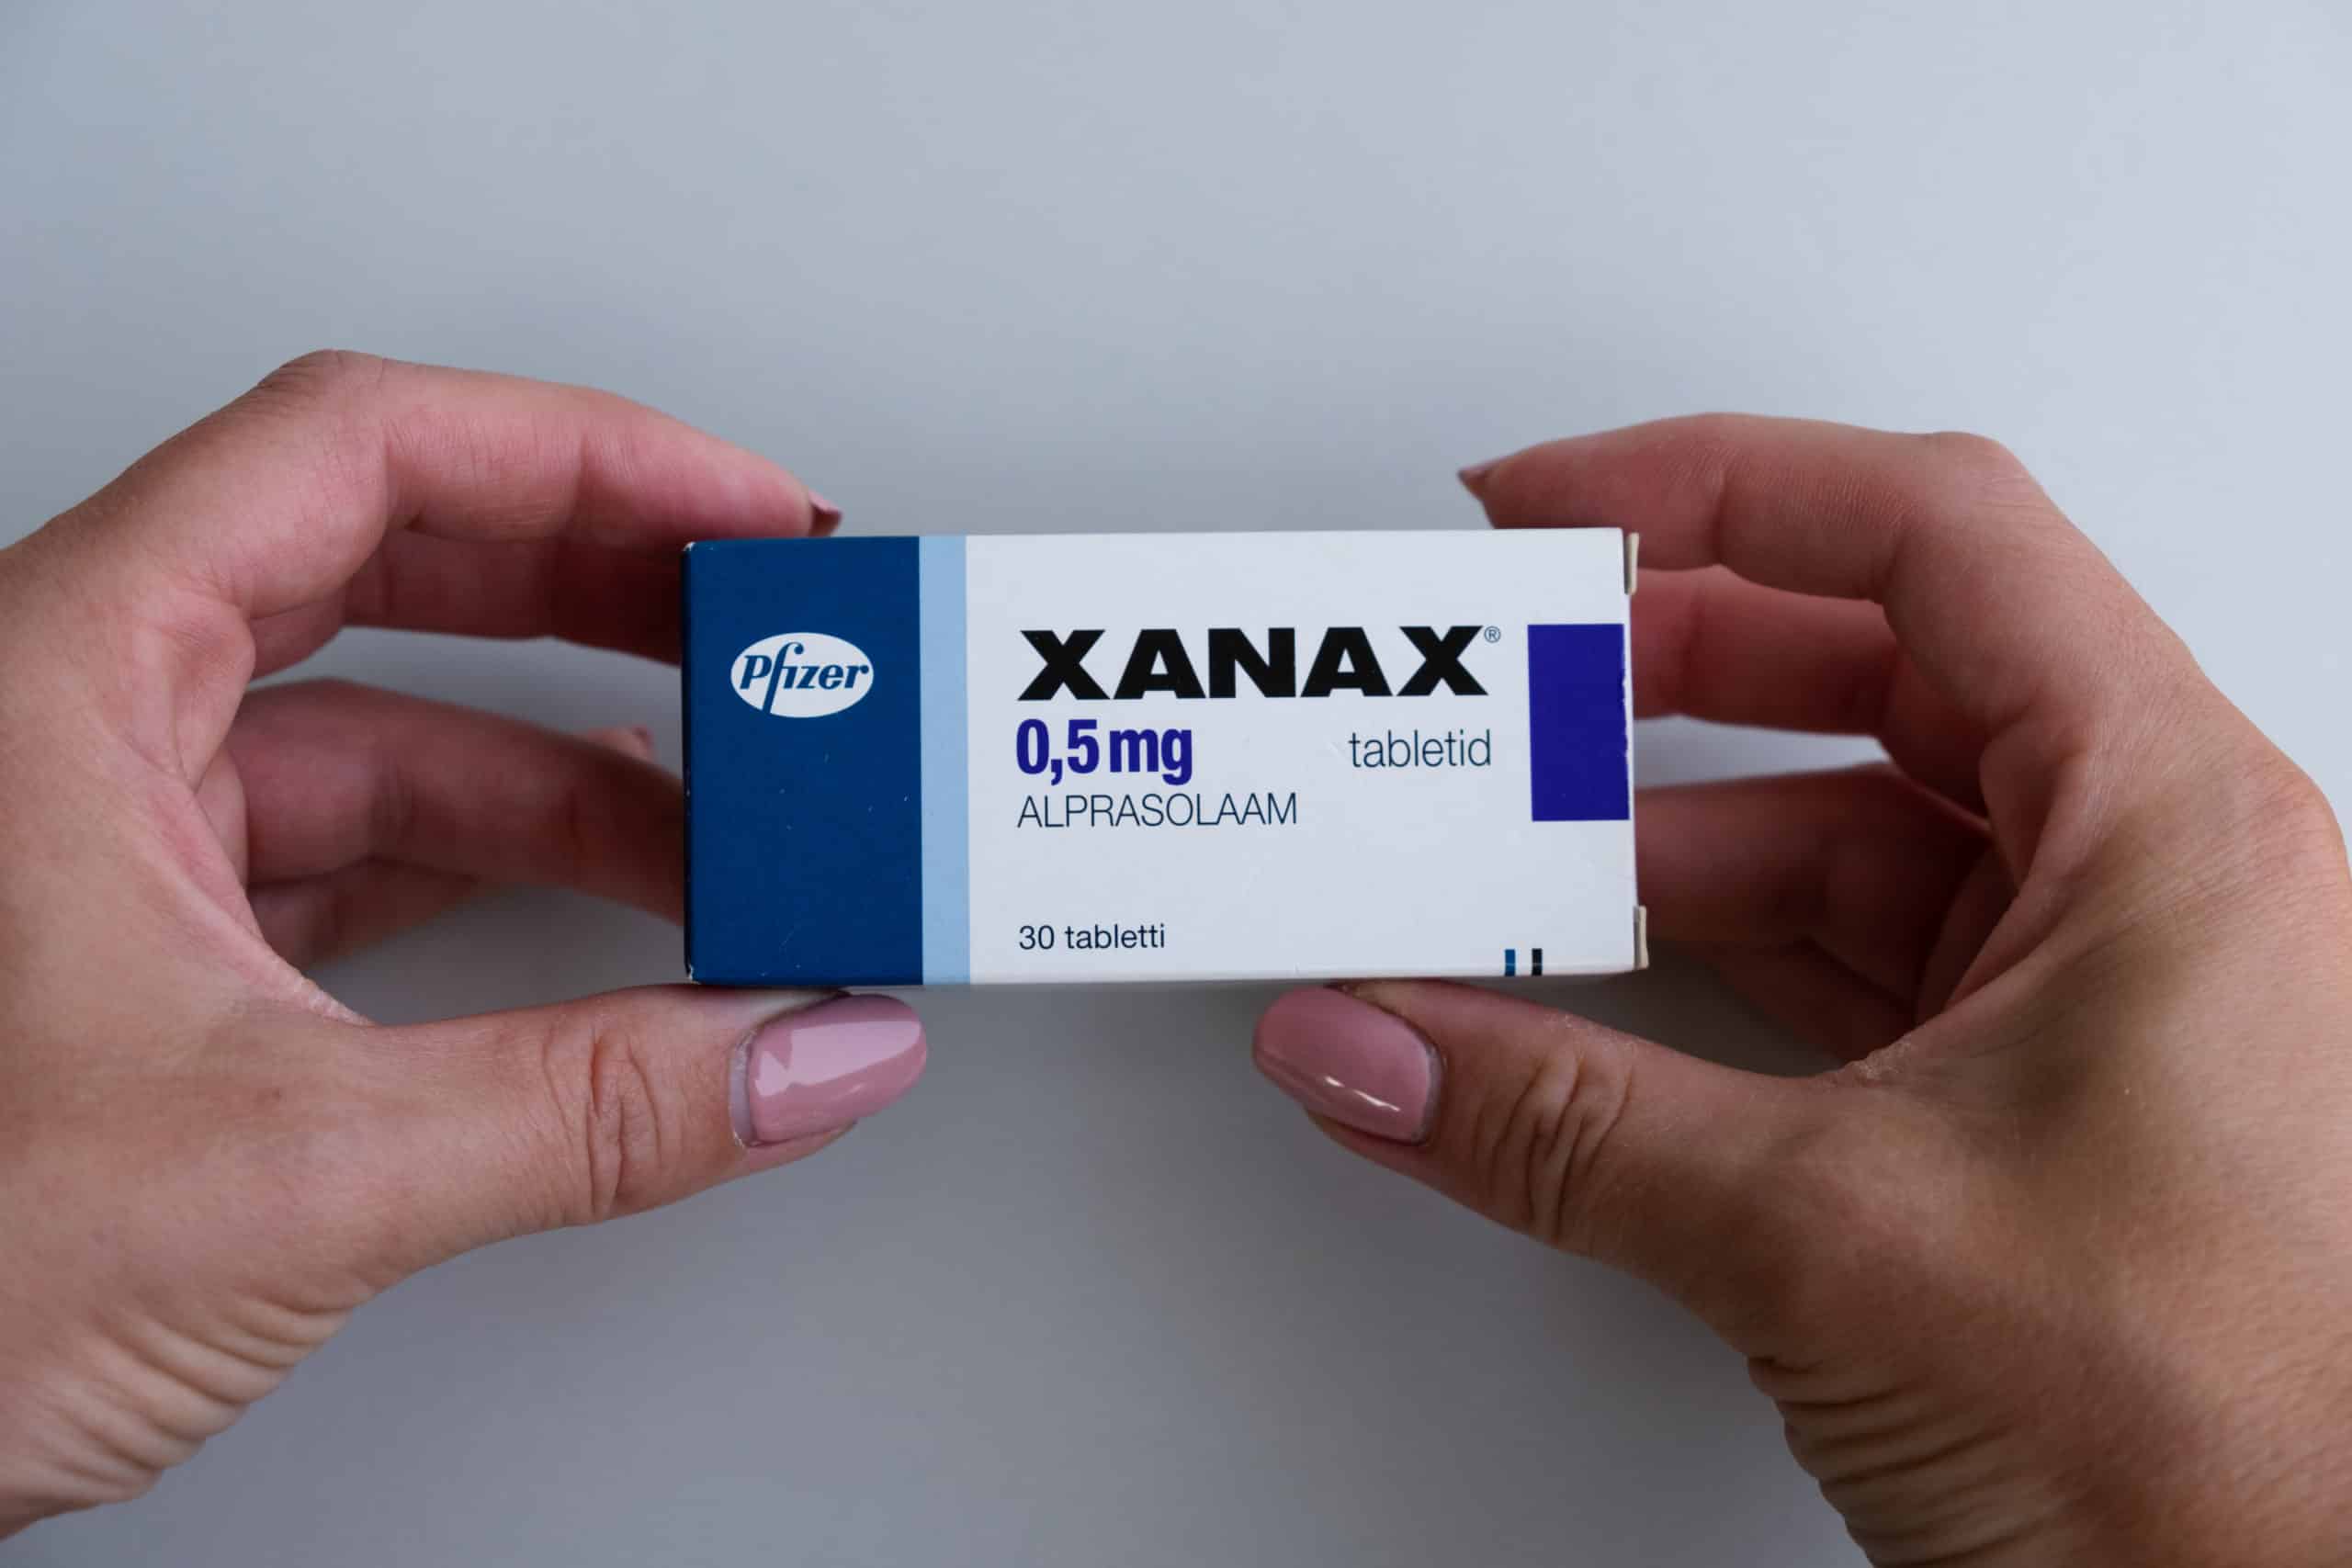 Is Xanax Addictive?